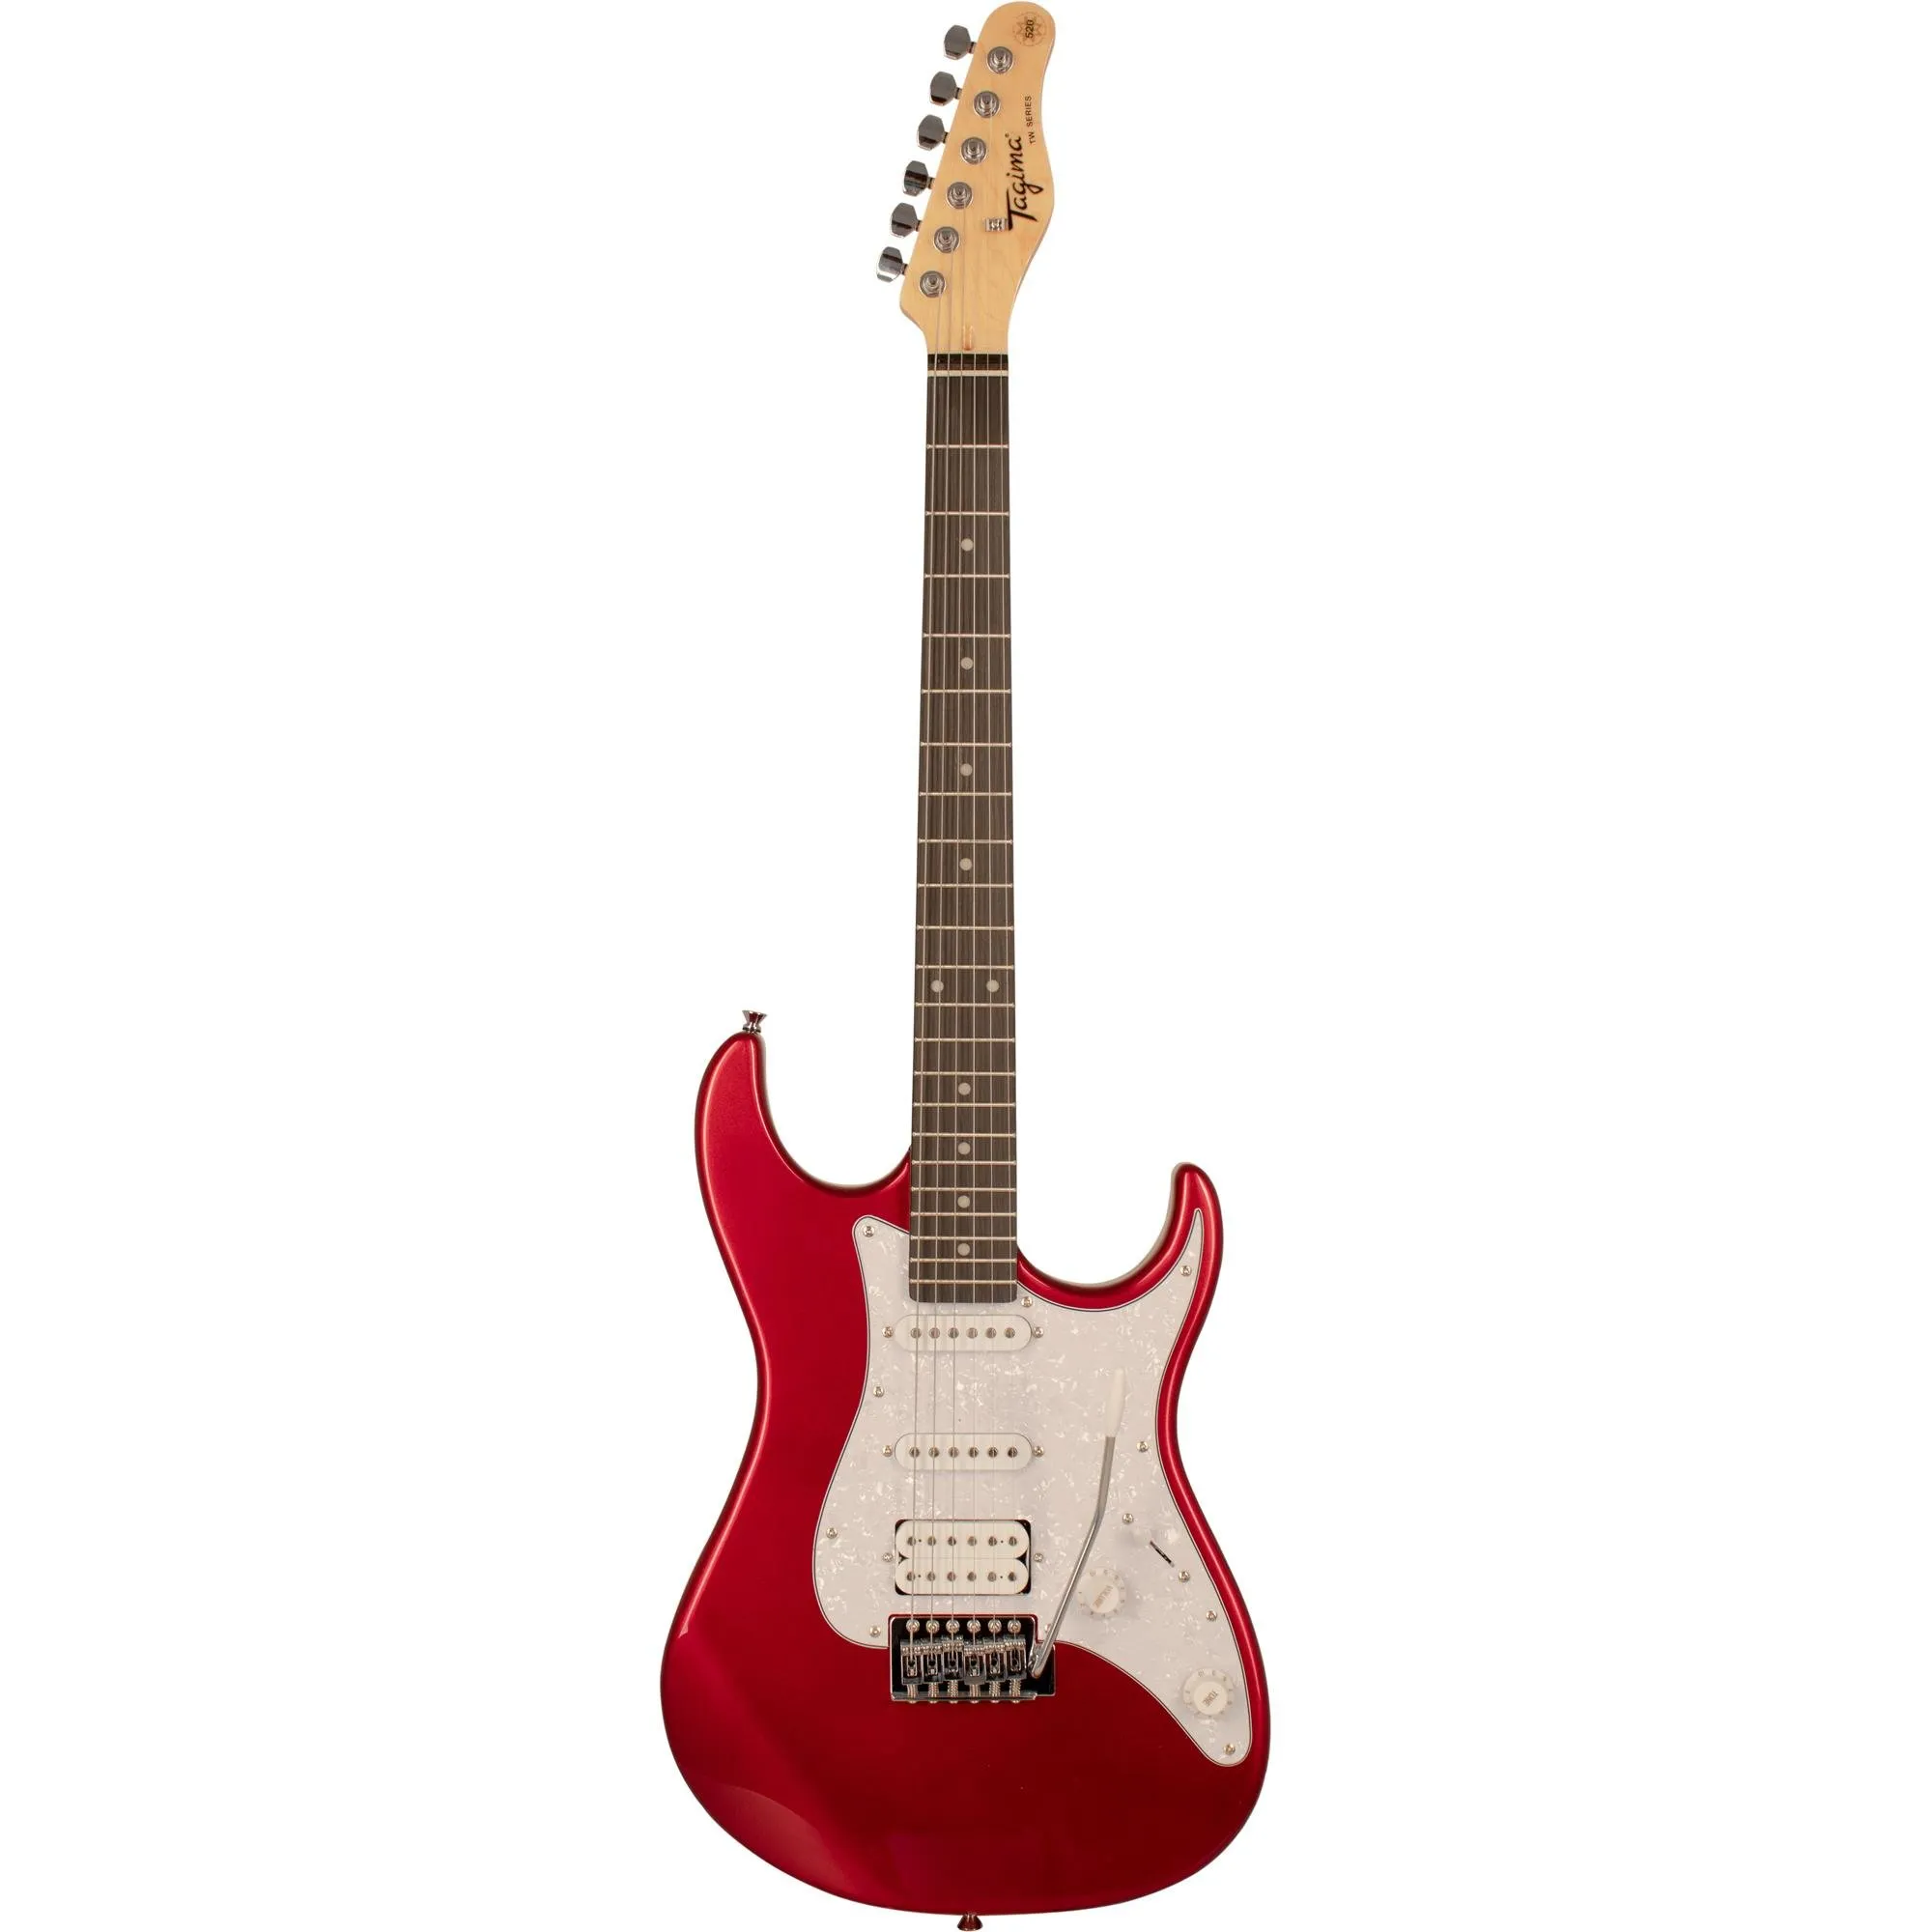 Guitarra Tagima TG-520 Candy Apple por 956,99 à vista no boleto/pix ou parcele em até 10x sem juros. Compre na loja Mundomax!